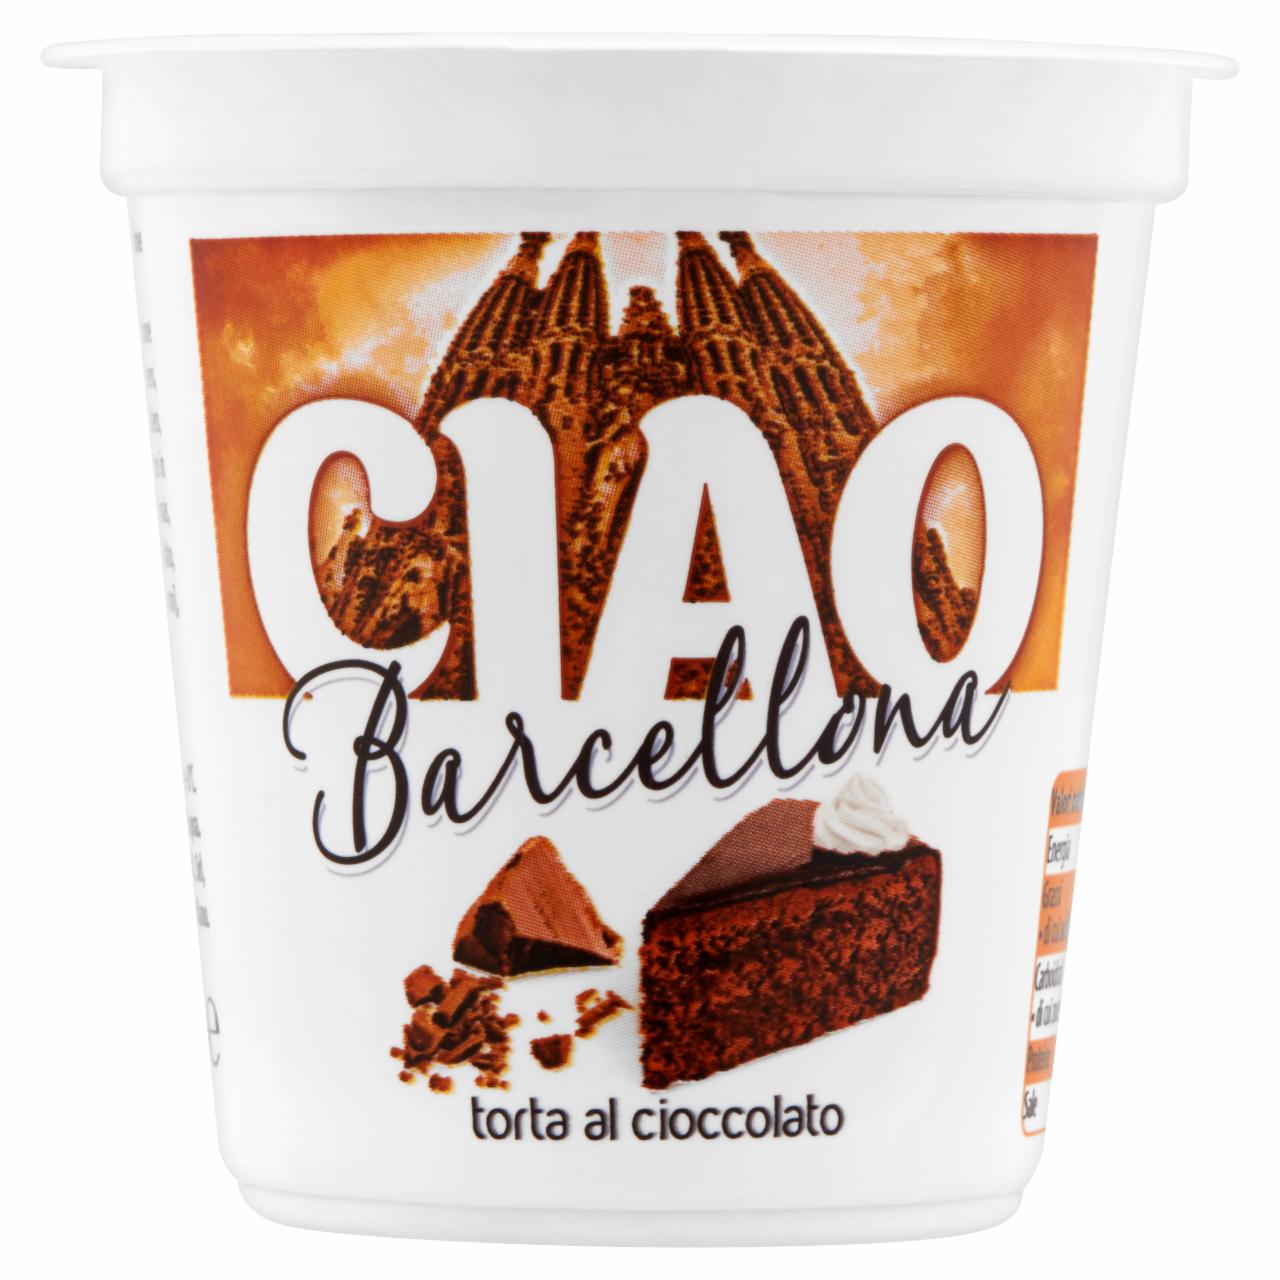 Képek - Ciao Barcelona desszertjoghurt csokoládé készítménnyel 125 g